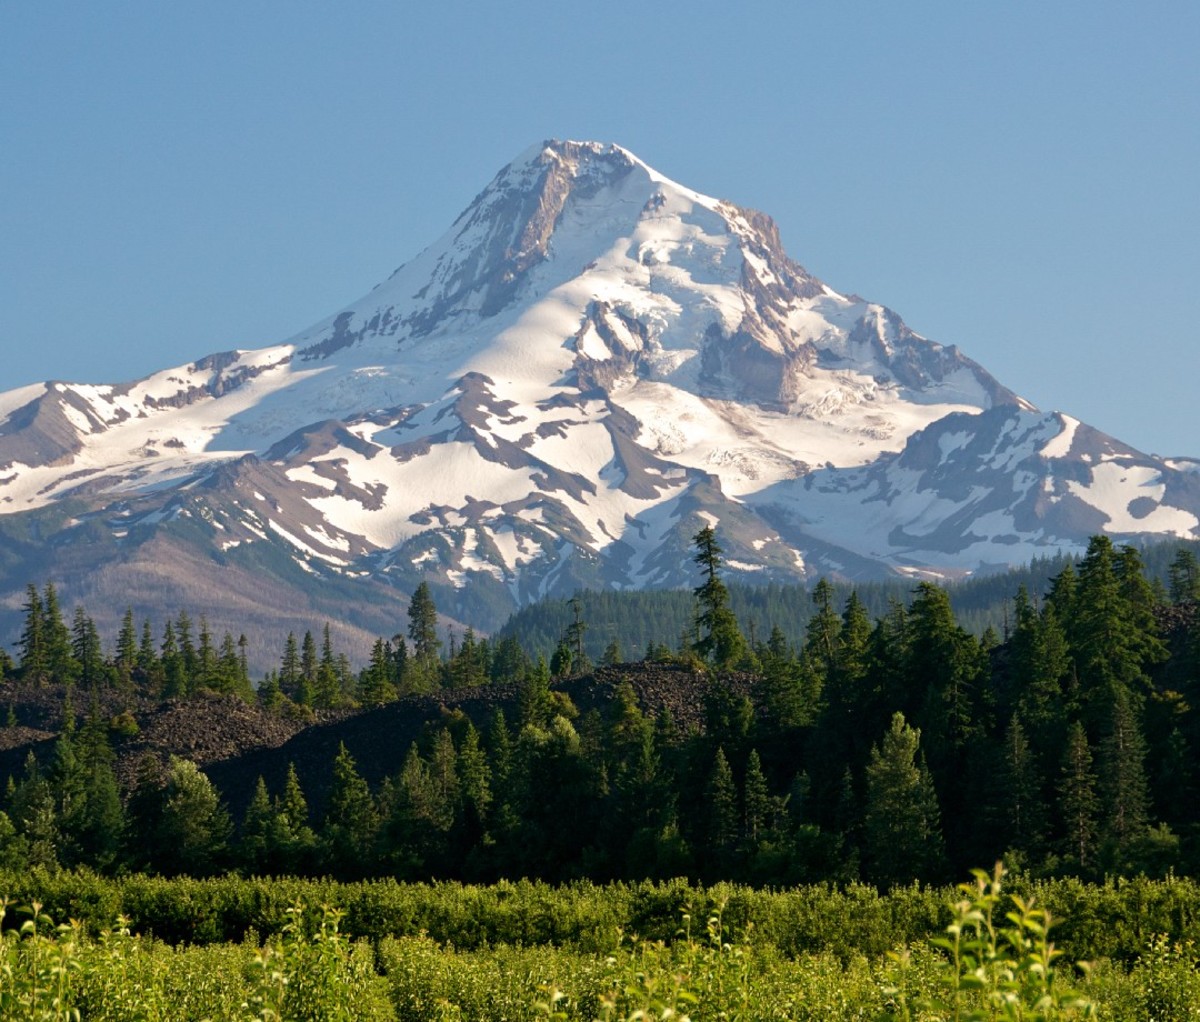 Mount Hood and vineyards